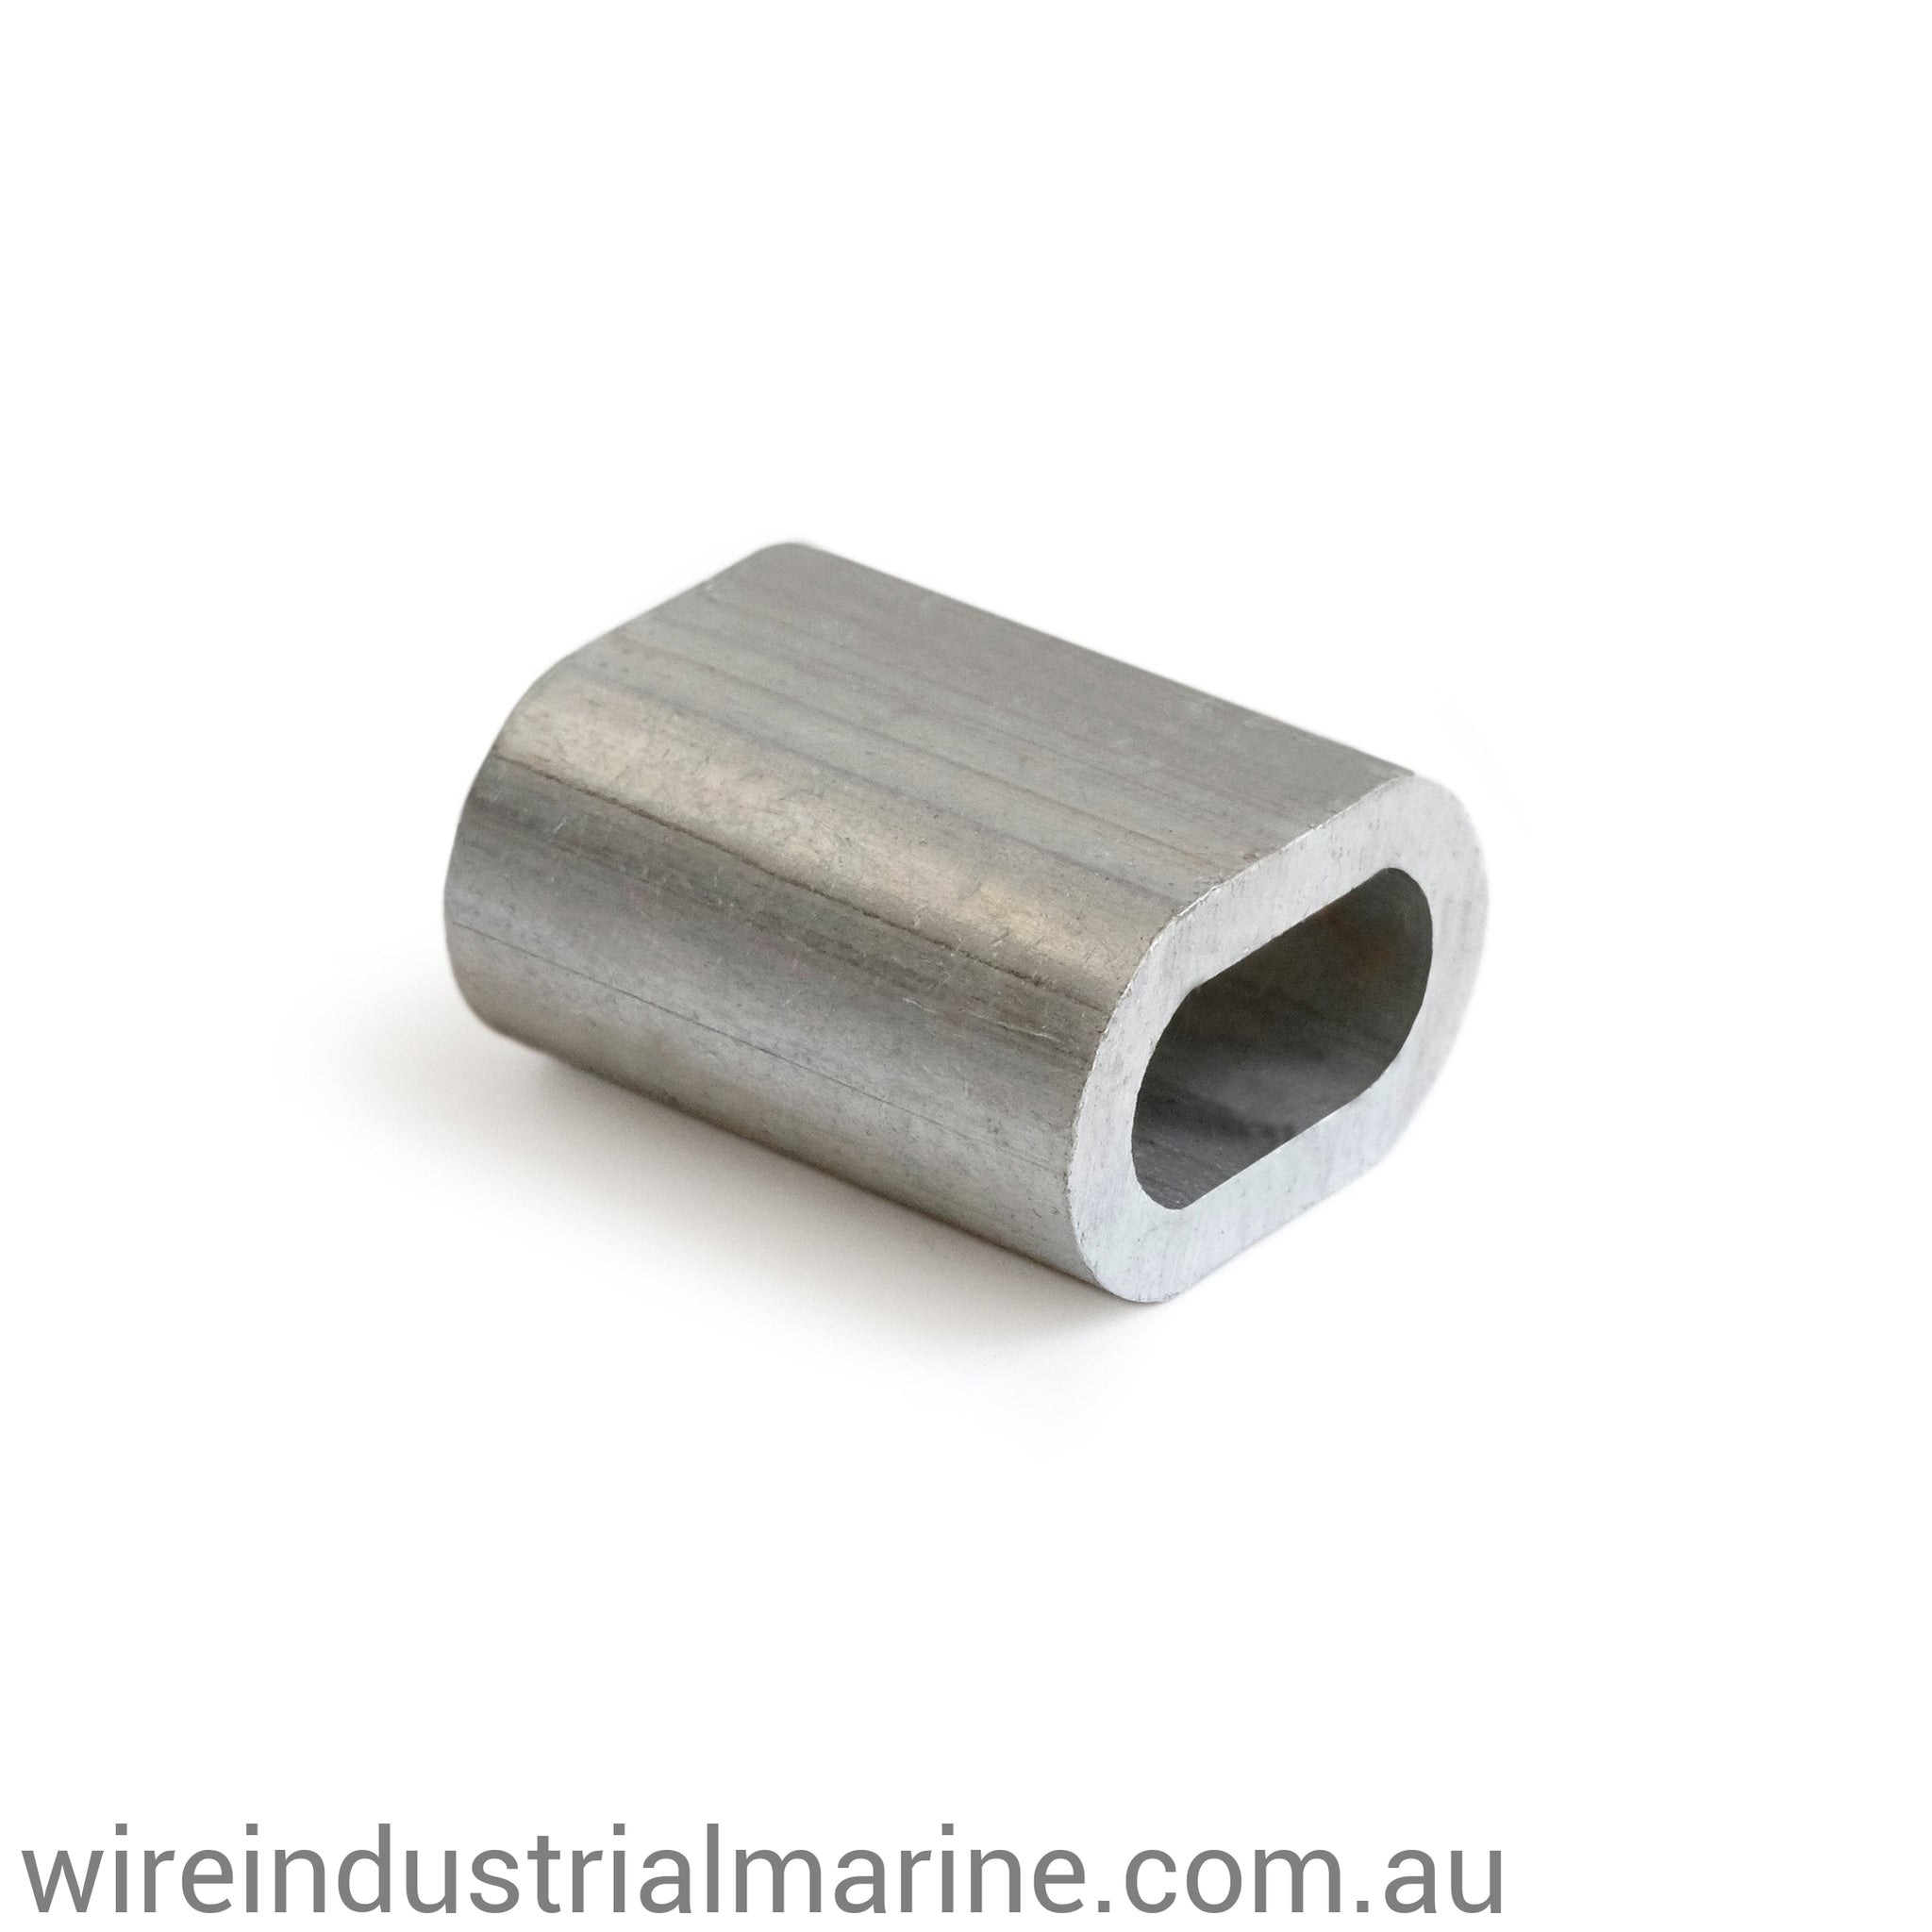 4.5mm ALLOY-DIN Code machine press ferrule for galvanised wire-wireindustrialmarine